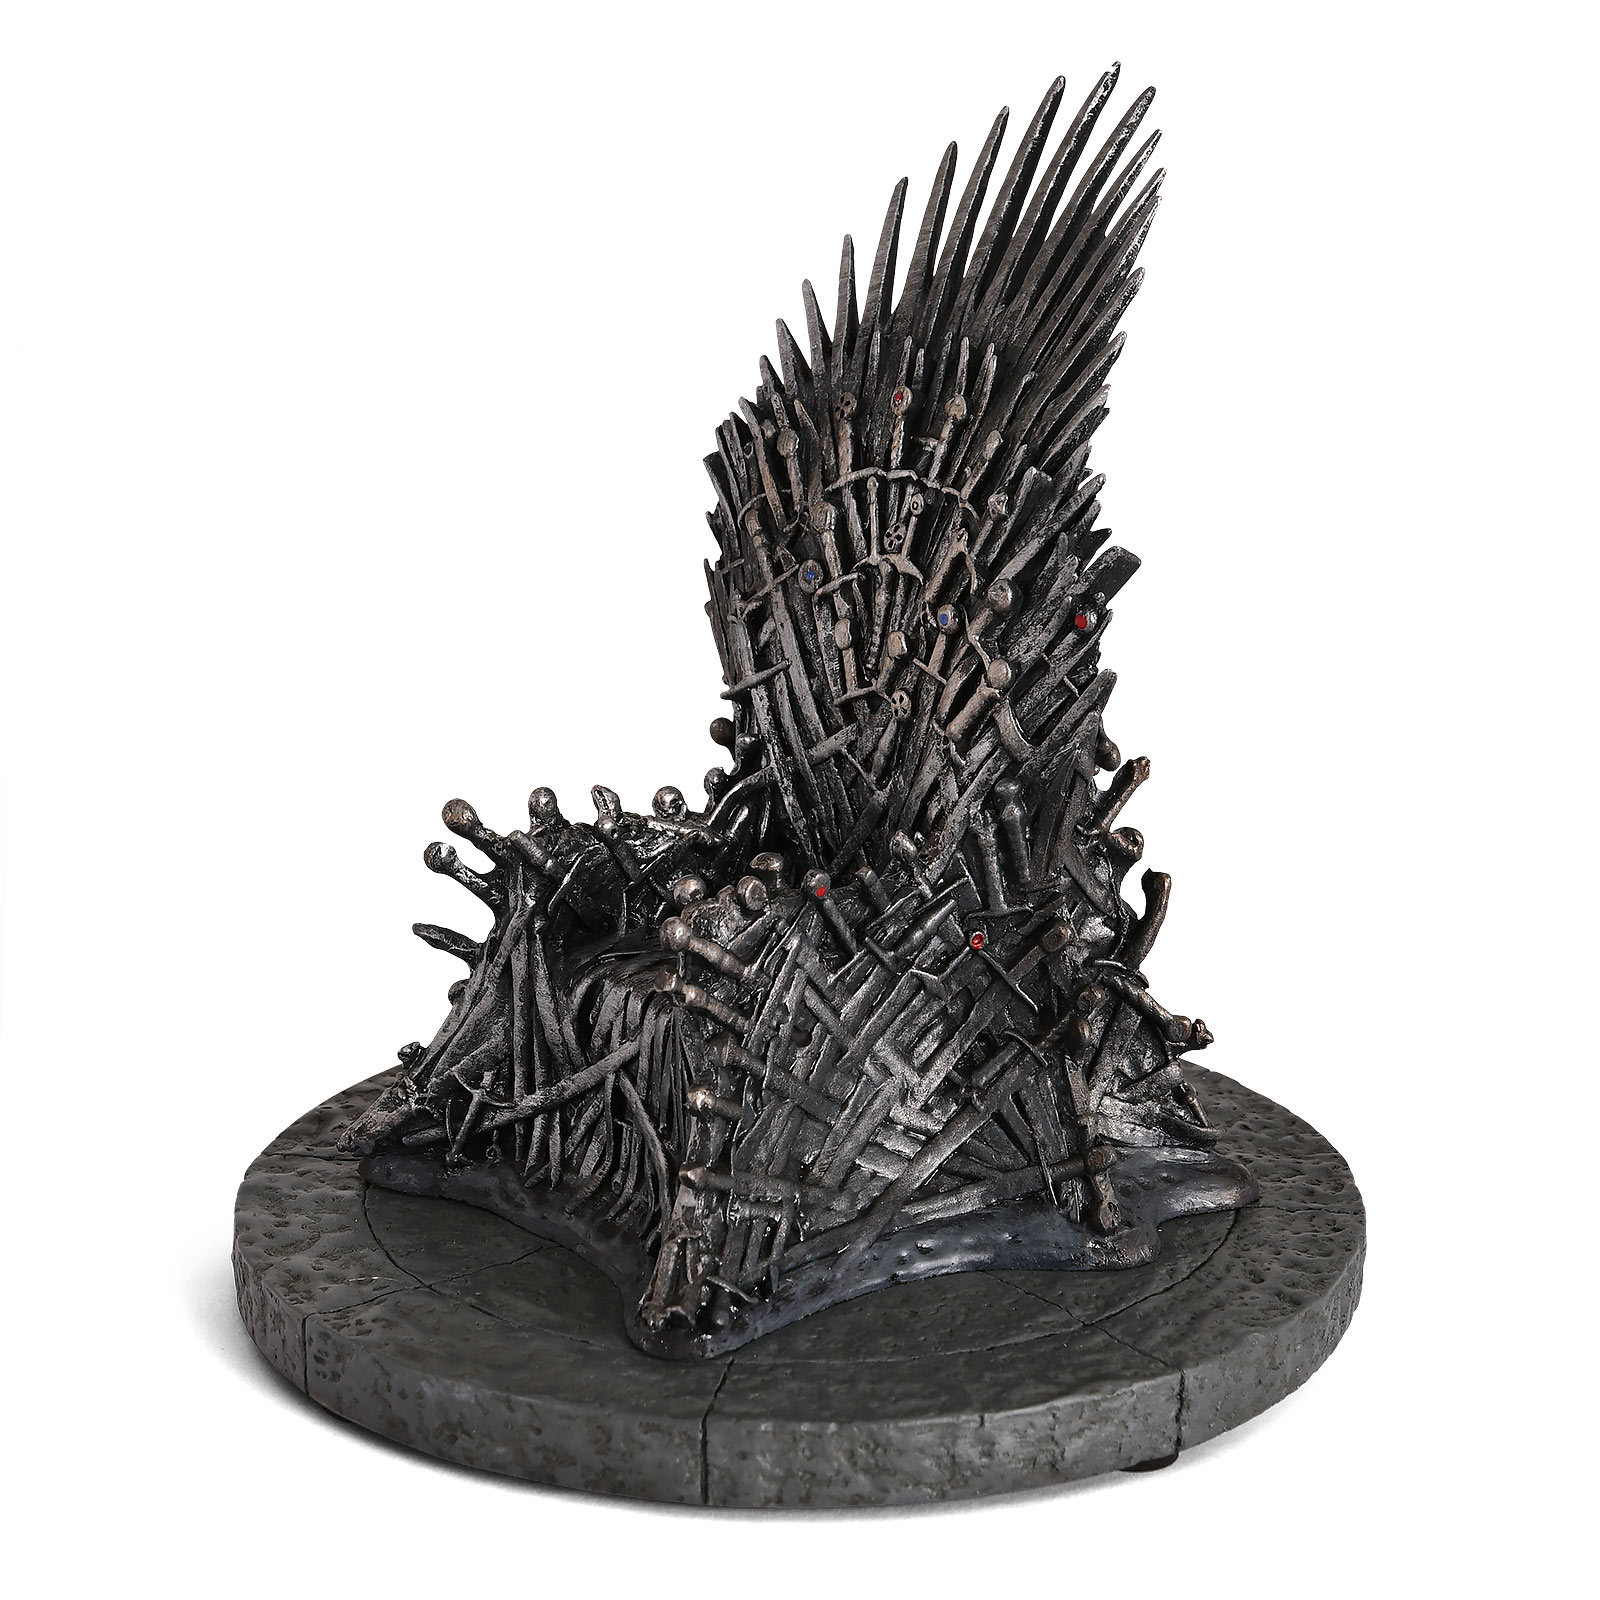 Game of Thrones - Ijzeren Troon Replica 17 cm